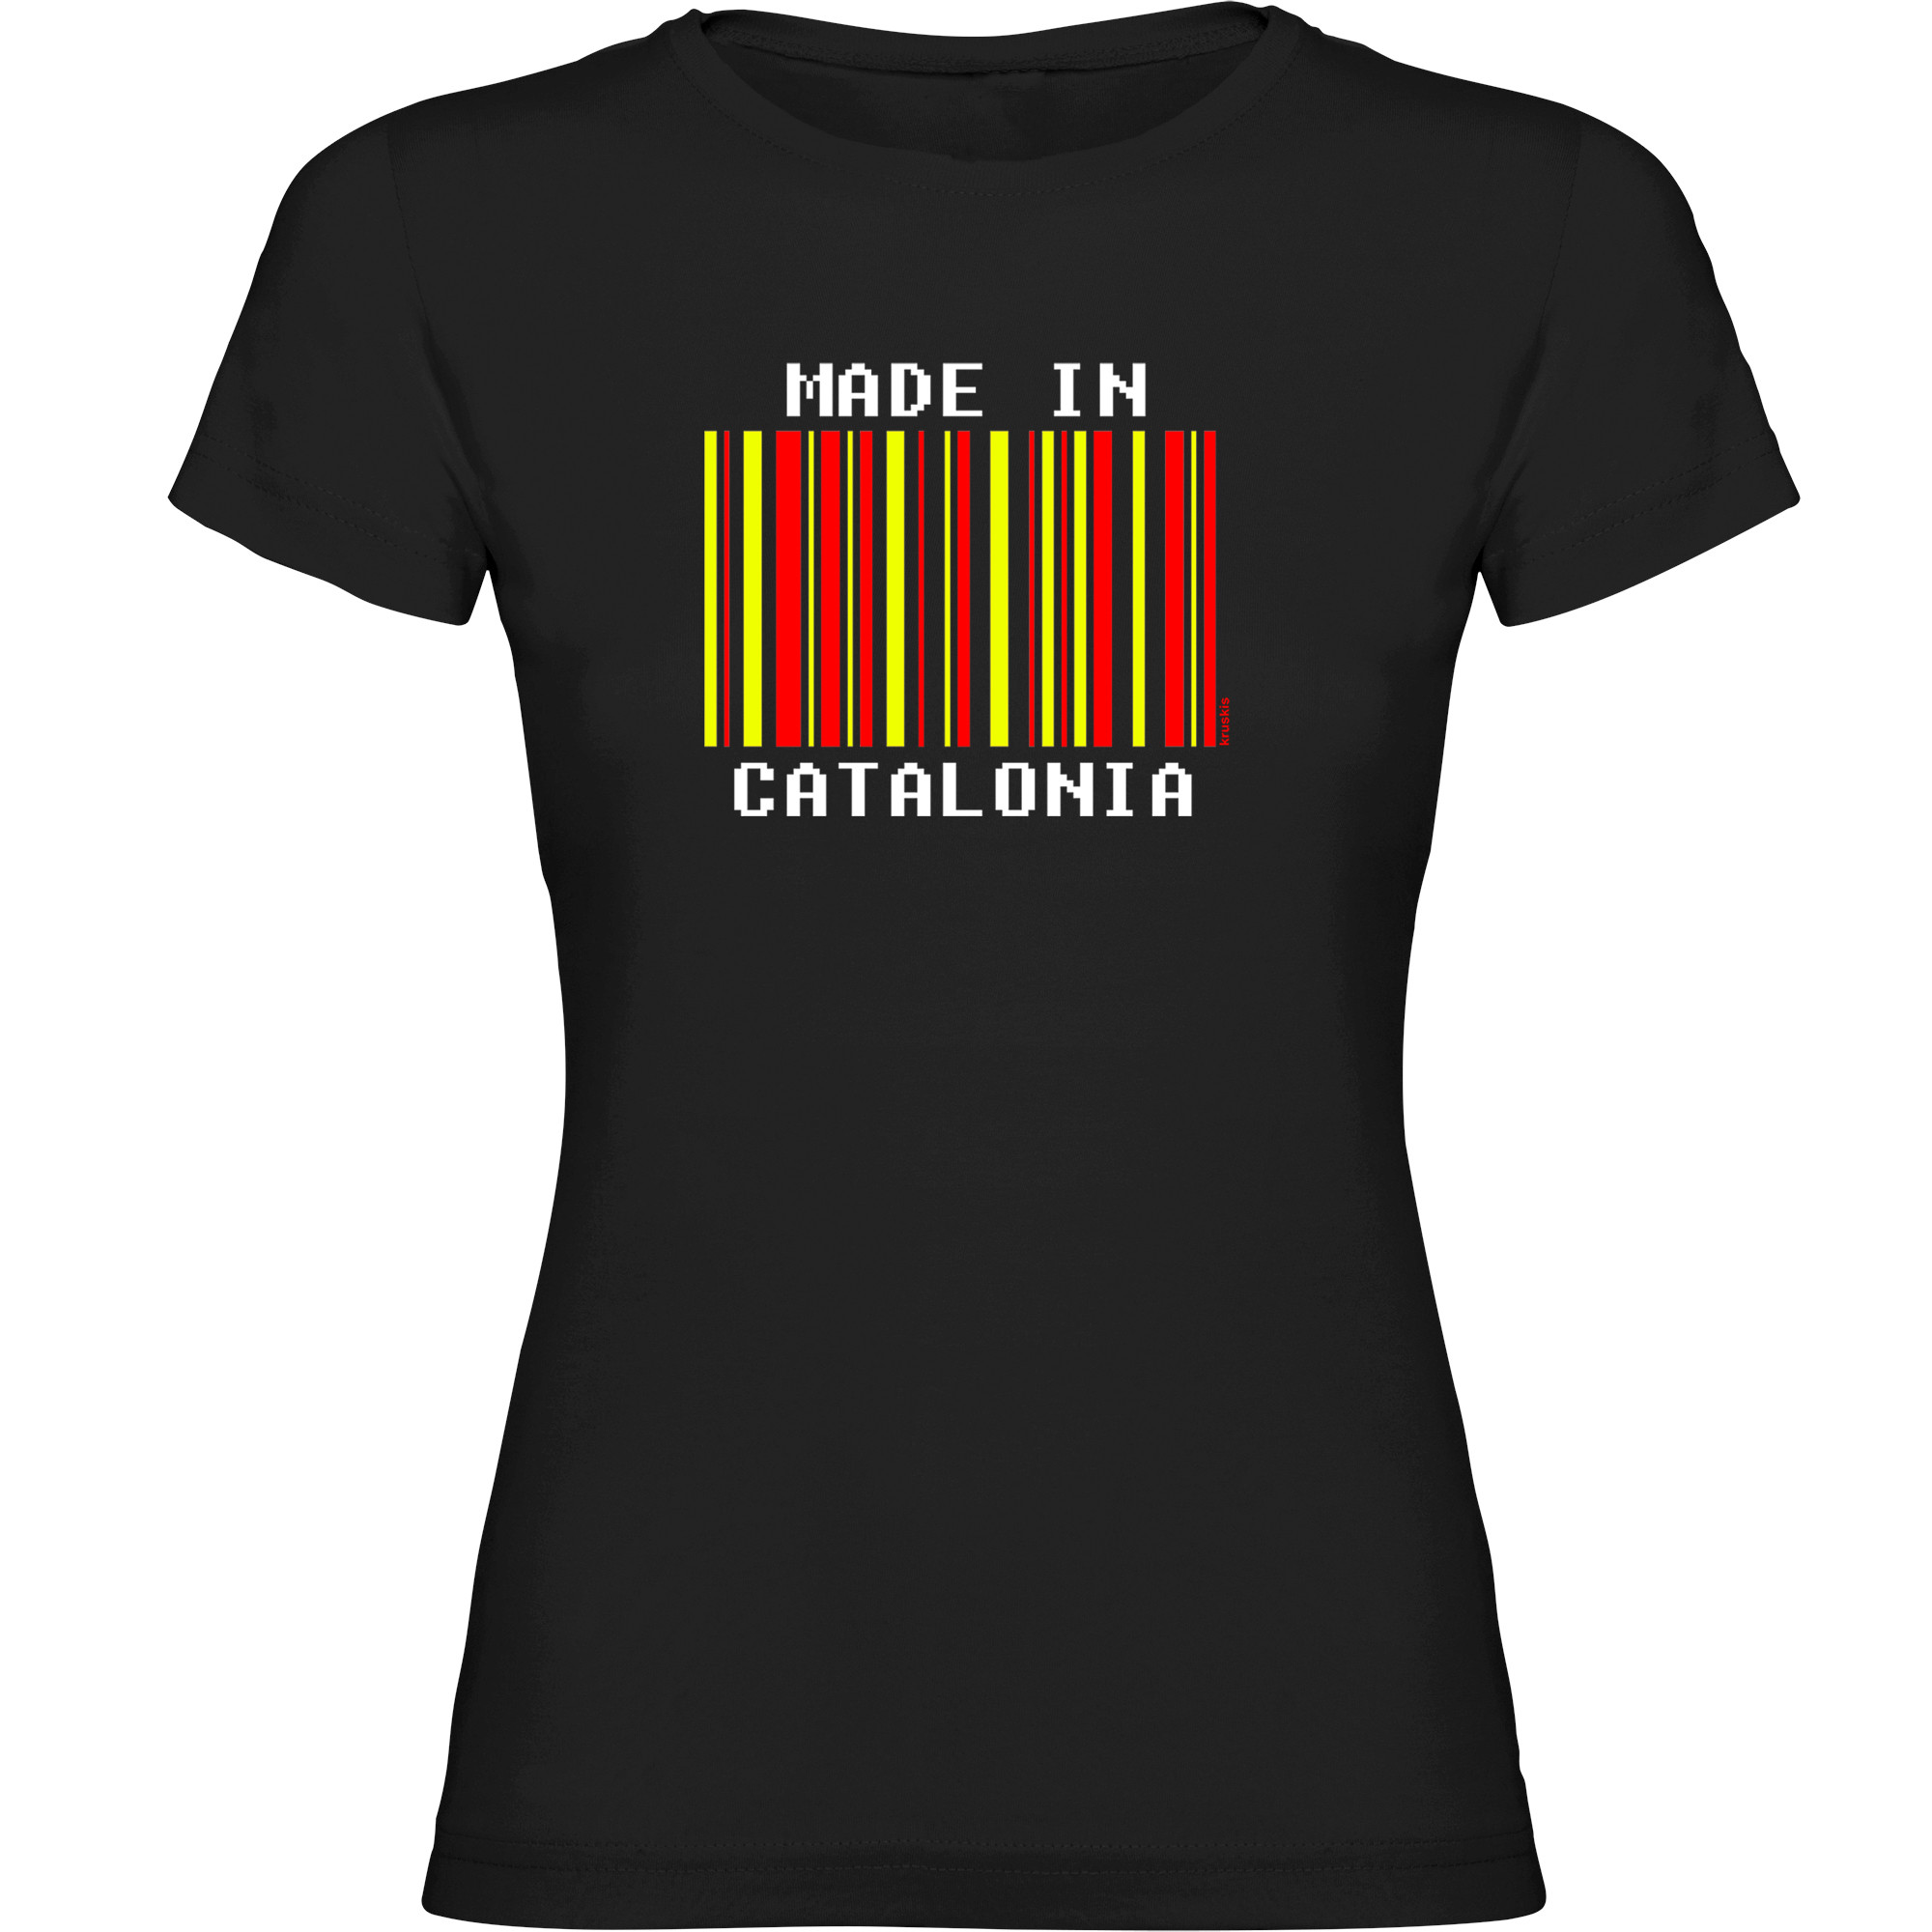 T Shirt Catalogna Made in Catalonia Manica Corta Donna